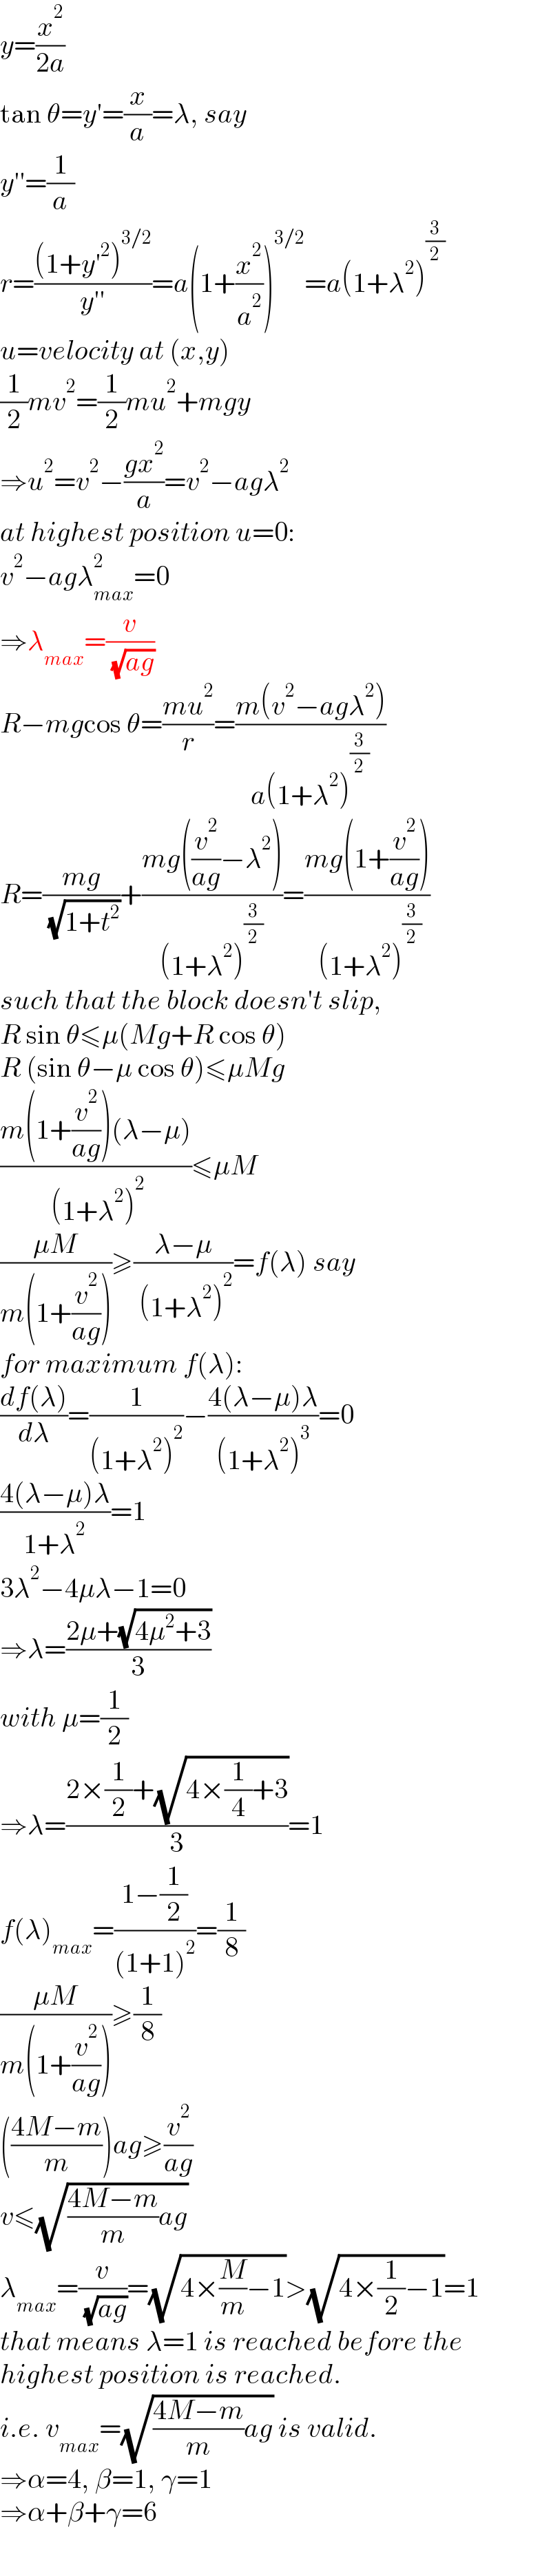 y=(x^2 /(2a))  tan θ=y′=(x/a)=λ, say  y′′=(1/a)  r=(((1+y′^2 )^(3/2) )/(y′′))=a(1+(x^2 /a^2 ))^(3/2) =a(1+λ^2 )^(3/2)   u=velocity at (x,y)  (1/2)mv^2 =(1/2)mu^2 +mgy  ⇒u^2 =v^2 −((gx^2 )/a)=v^2 −agλ^2   at highest position u=0:  v^2 −agλ_(max) ^2 =0  ⇒λ_(max) =(v/( (√(ag))))  R−mgcos θ=((mu^2 )/r)=((m(v^2 −agλ^2 ))/(a(1+λ^2 )^(3/2) ))  R=((mg)/( (√(1+t^2 ))))+((mg((v^2 /(ag))−λ^2 ))/((1+λ^2 )^(3/2) ))=((mg(1+(v^2 /(ag))))/( (1+λ^2 )^(3/2) ))  such that the block doesn′t slip,  R sin θ≤μ(Mg+R cos θ)  R (sin θ−μ cos θ)≤μMg  ((m(1+(v^2 /(ag)))(λ−μ))/( (1+λ^2 )^2 ))≤μM  ((μM)/(m(1+(v^2 /(ag)))))≥((λ−μ)/( (1+λ^2 )^2 ))=f(λ) say  for maximum f(λ):  ((df(λ))/dλ)=(1/((1+λ^2 )^2 ))−((4(λ−μ)λ)/((1+λ^2 )^3 ))=0  ((4(λ−μ)λ)/(1+λ^2 ))=1  3λ^2 −4μλ−1=0  ⇒λ=((2μ+(√(4μ^2 +3)))/3)  with μ=(1/2)  ⇒λ=((2×(1/2)+(√(4×(1/4)+3)))/3)=1  f(λ)_(max) =((1−(1/2))/((1+1)^2 ))=(1/8)  ((μM)/(m(1+(v^2 /(ag)))))≥(1/8)  (((4M−m)/m))ag≥(v^2 /(ag))  v≤(√(((4M−m)/m)ag))  λ_(max) =(v/( (√(ag))))=(√(4×(M/m)−1))>(√(4×(1/2)−1))=1  that means λ=1 is reached before the  highest position is reached.  i.e. v_(max) =(√(((4M−m)/m)ag)) is valid.  ⇒α=4, β=1, γ=1  ⇒α+β+γ=6  